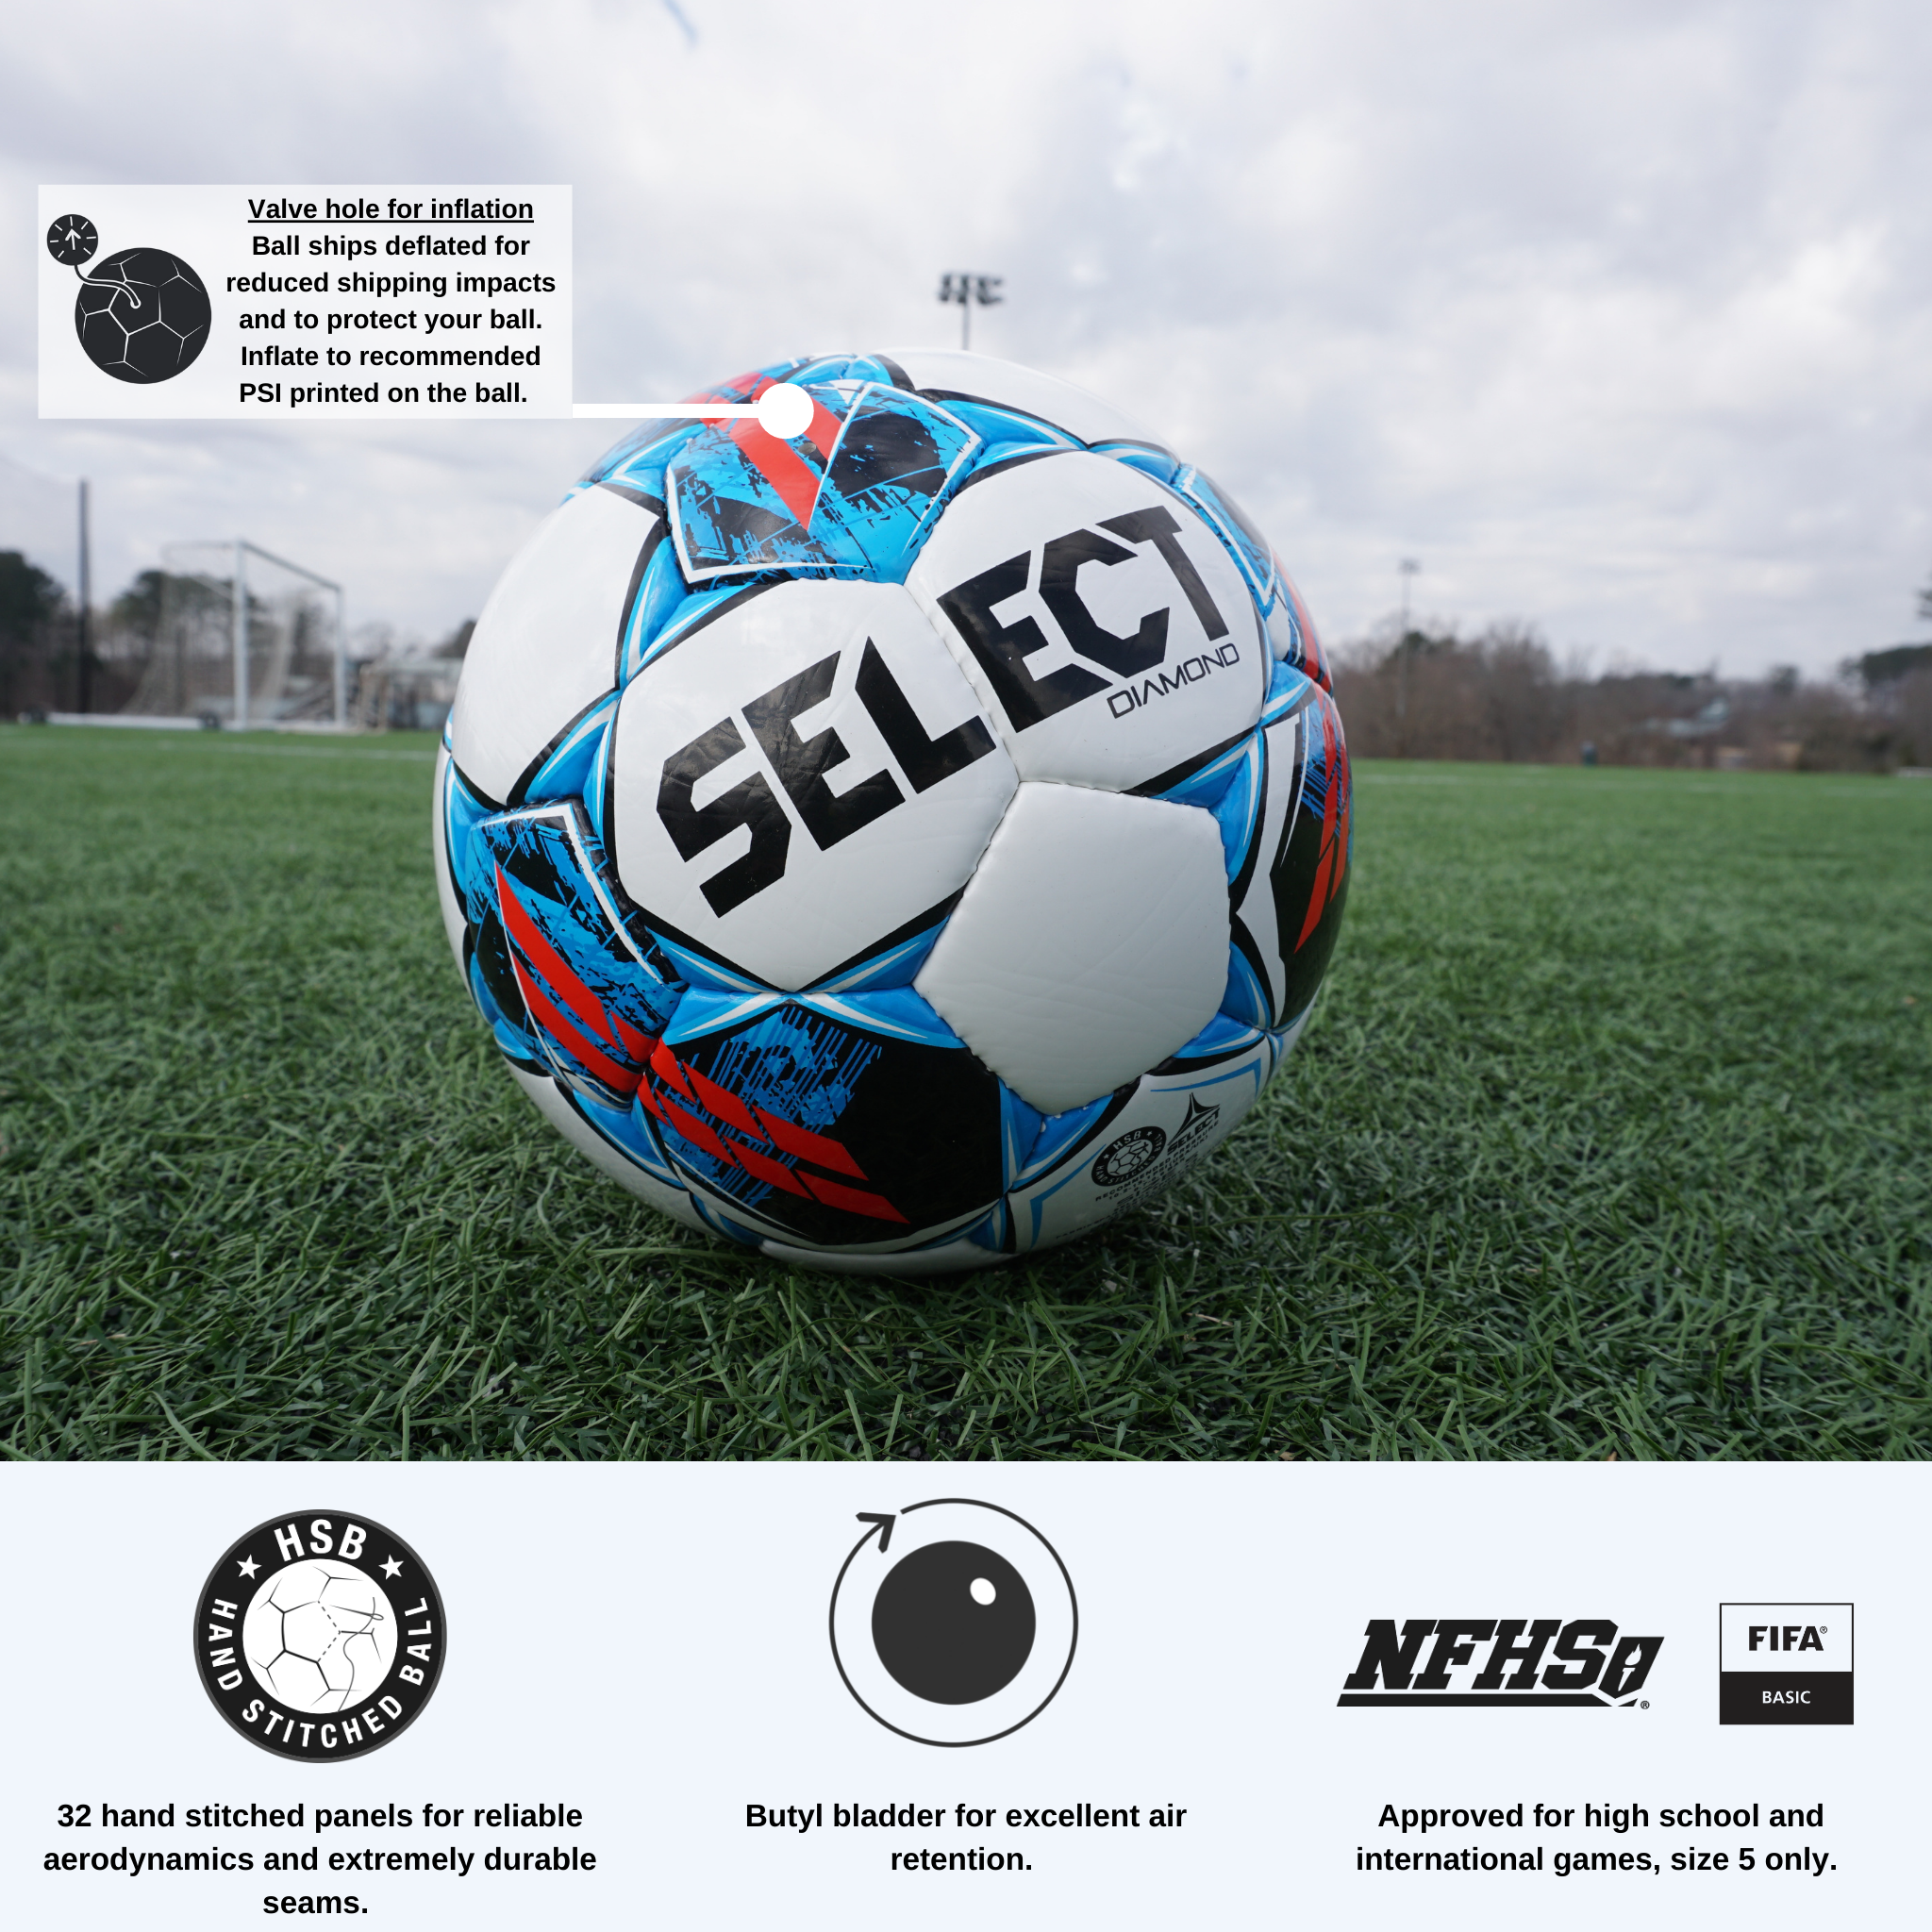 Select Numero 10 ballon de soccer